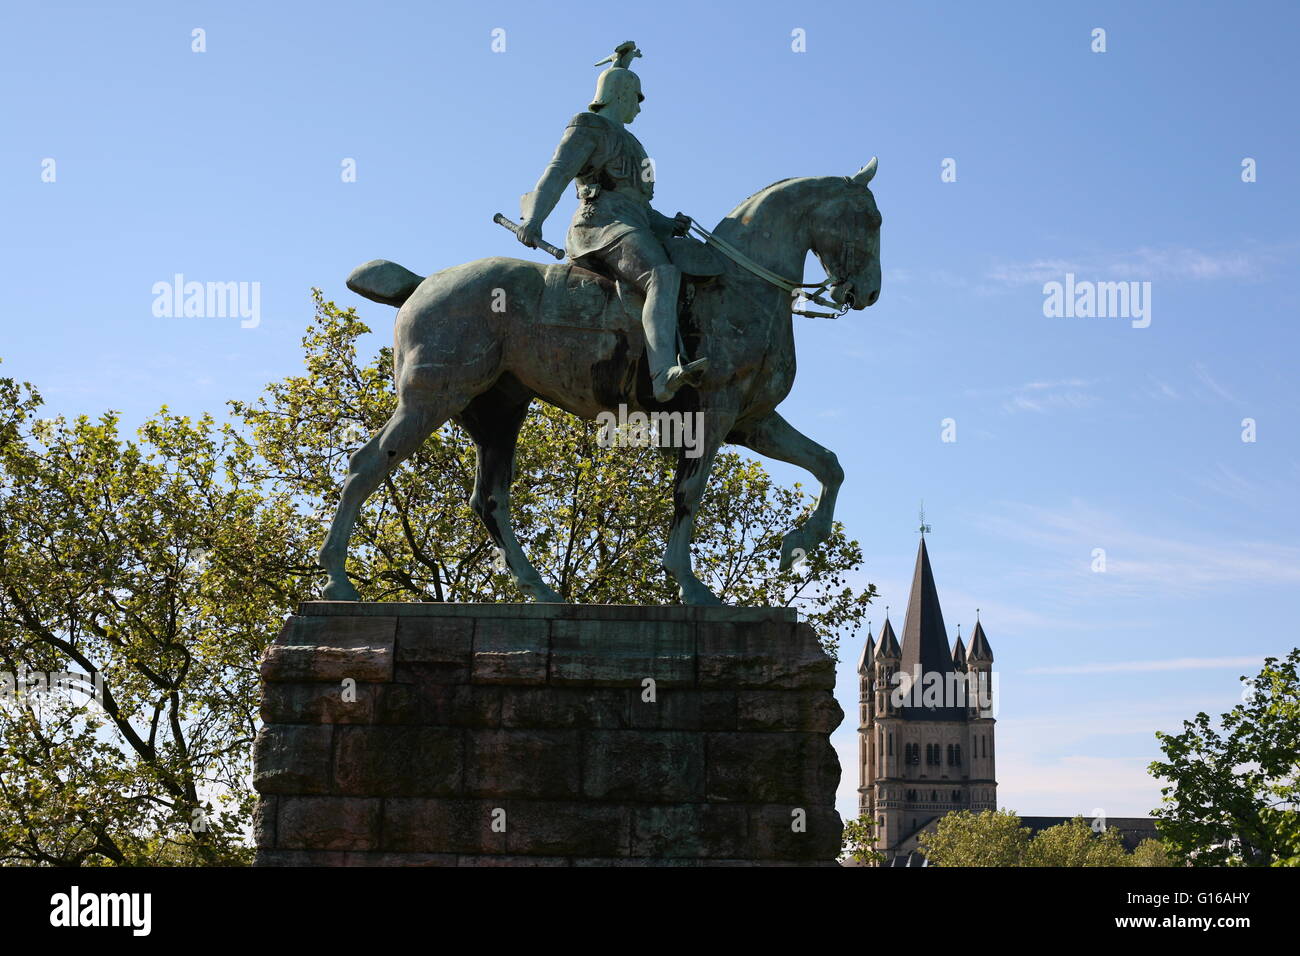 Monumento a cavallo a Colonia, Germania Foto Stock